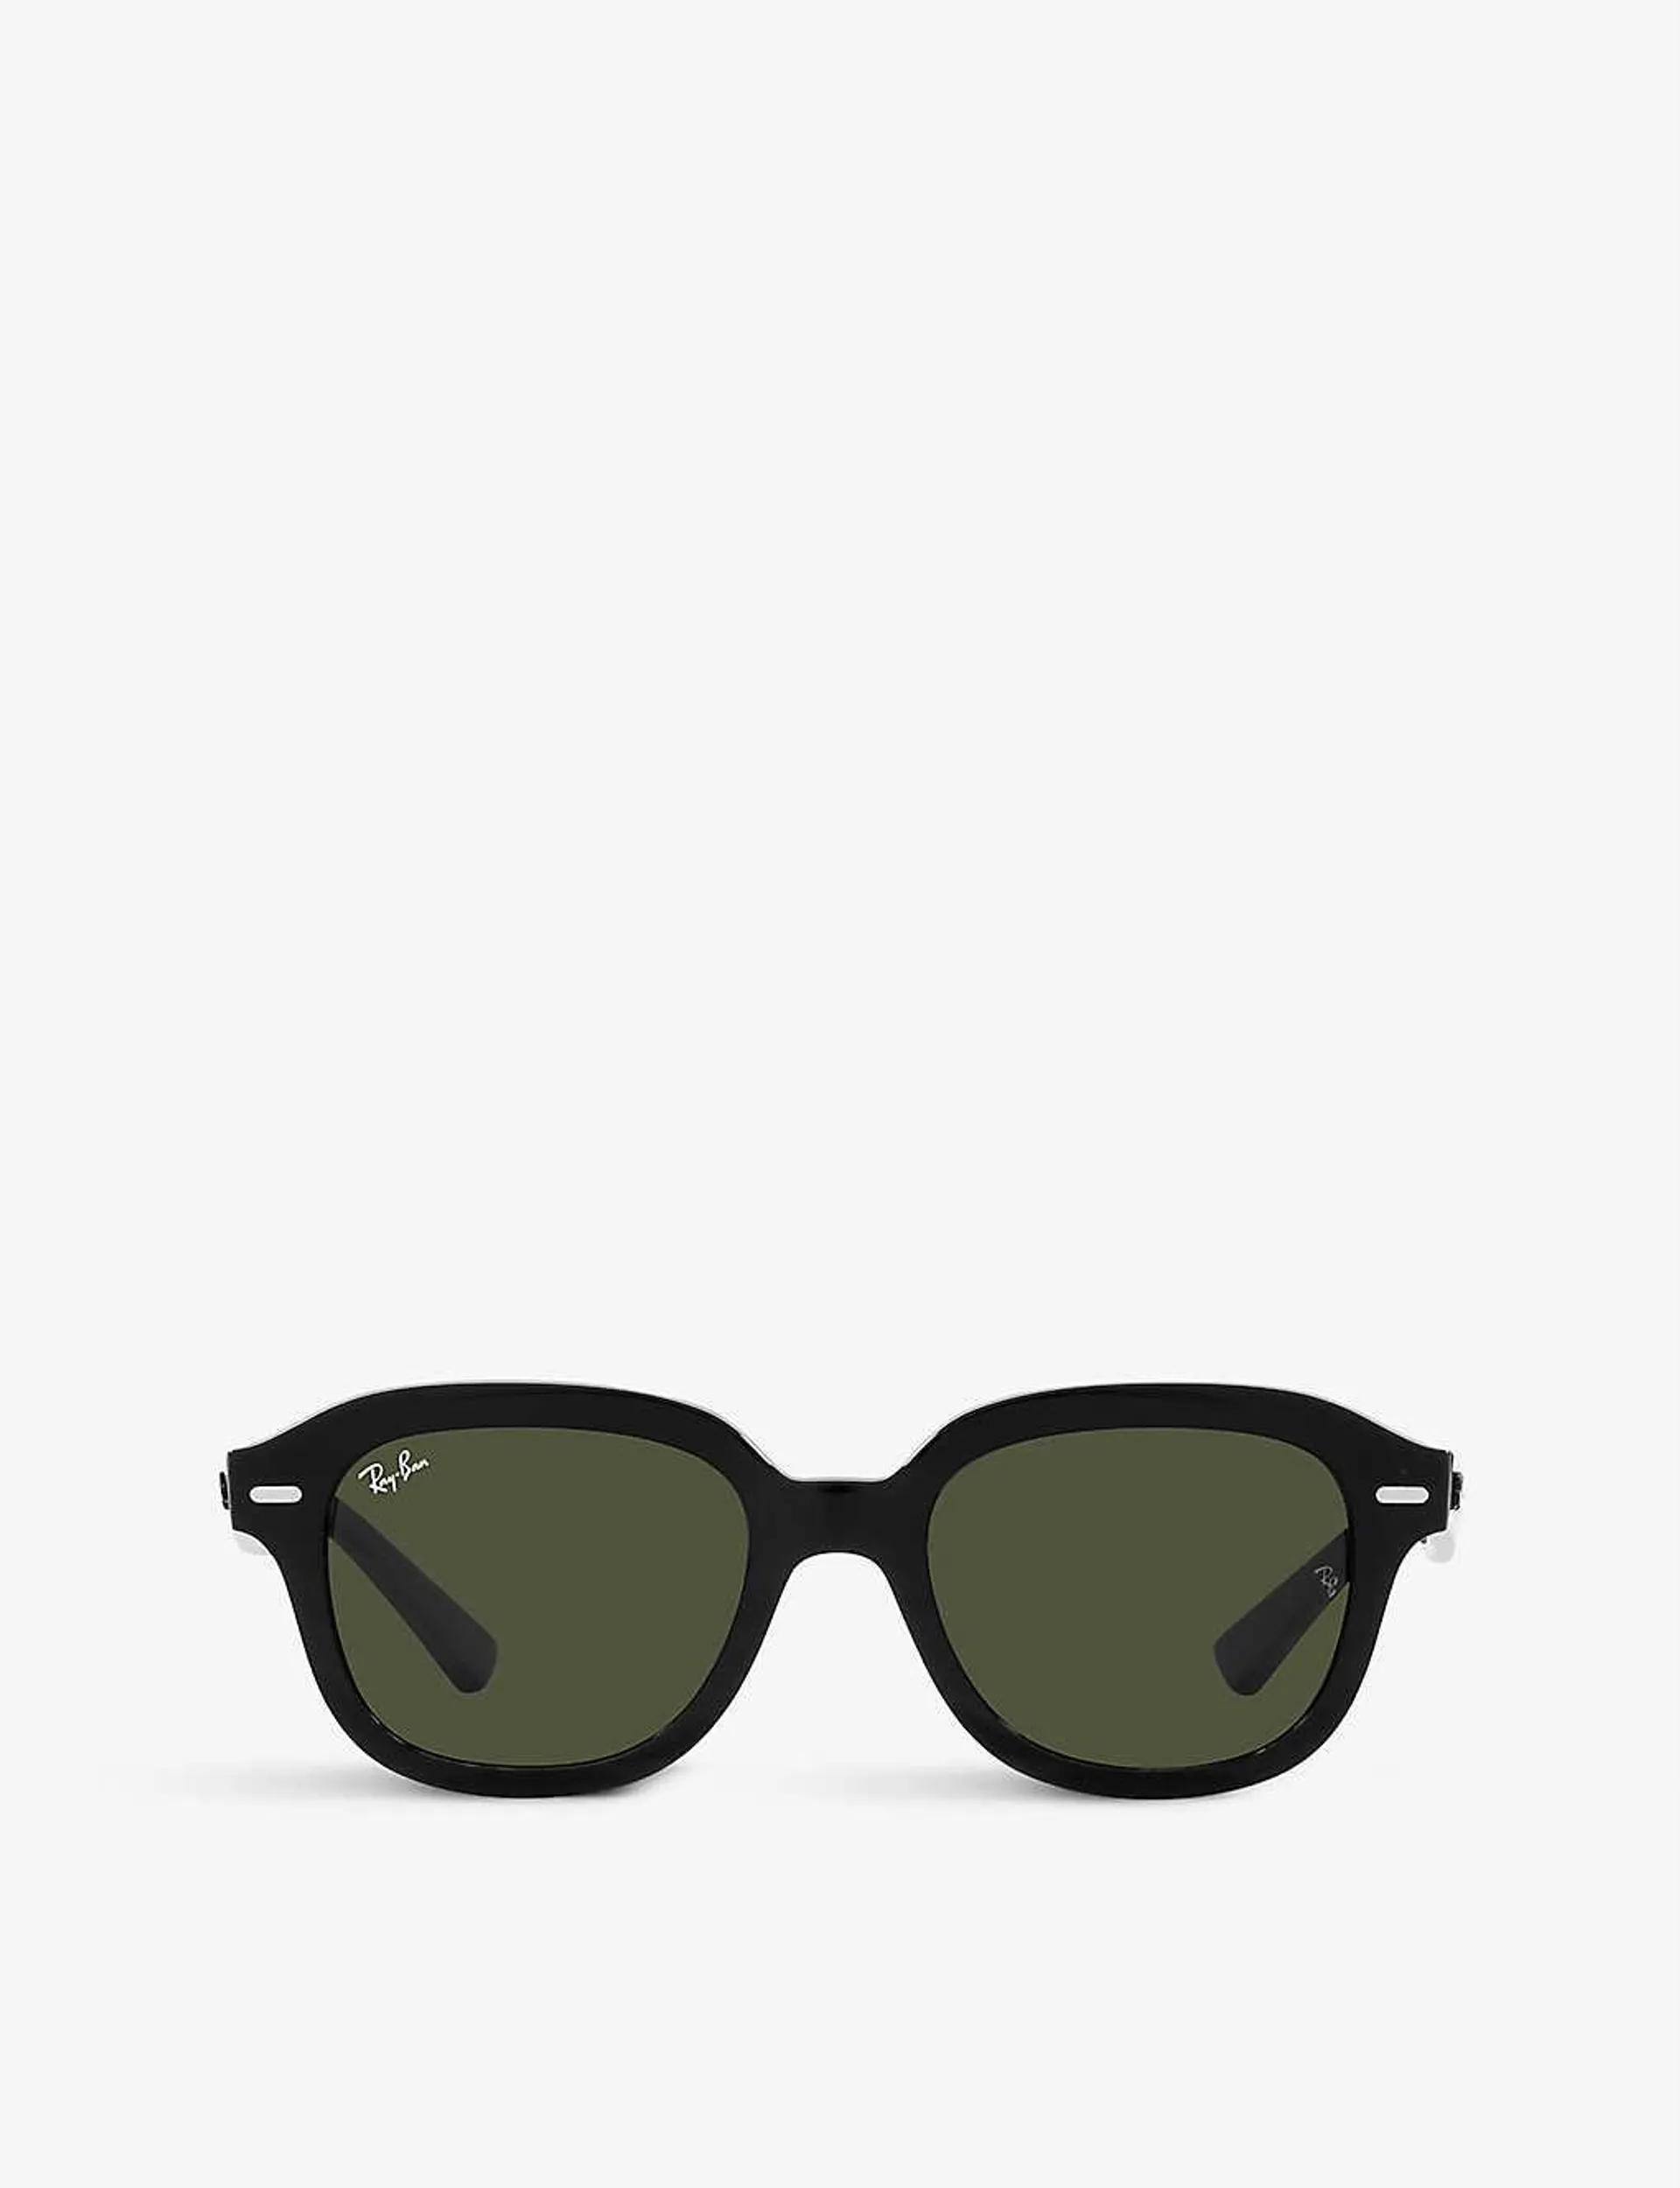 Erick RB4398 acetate sunglasses